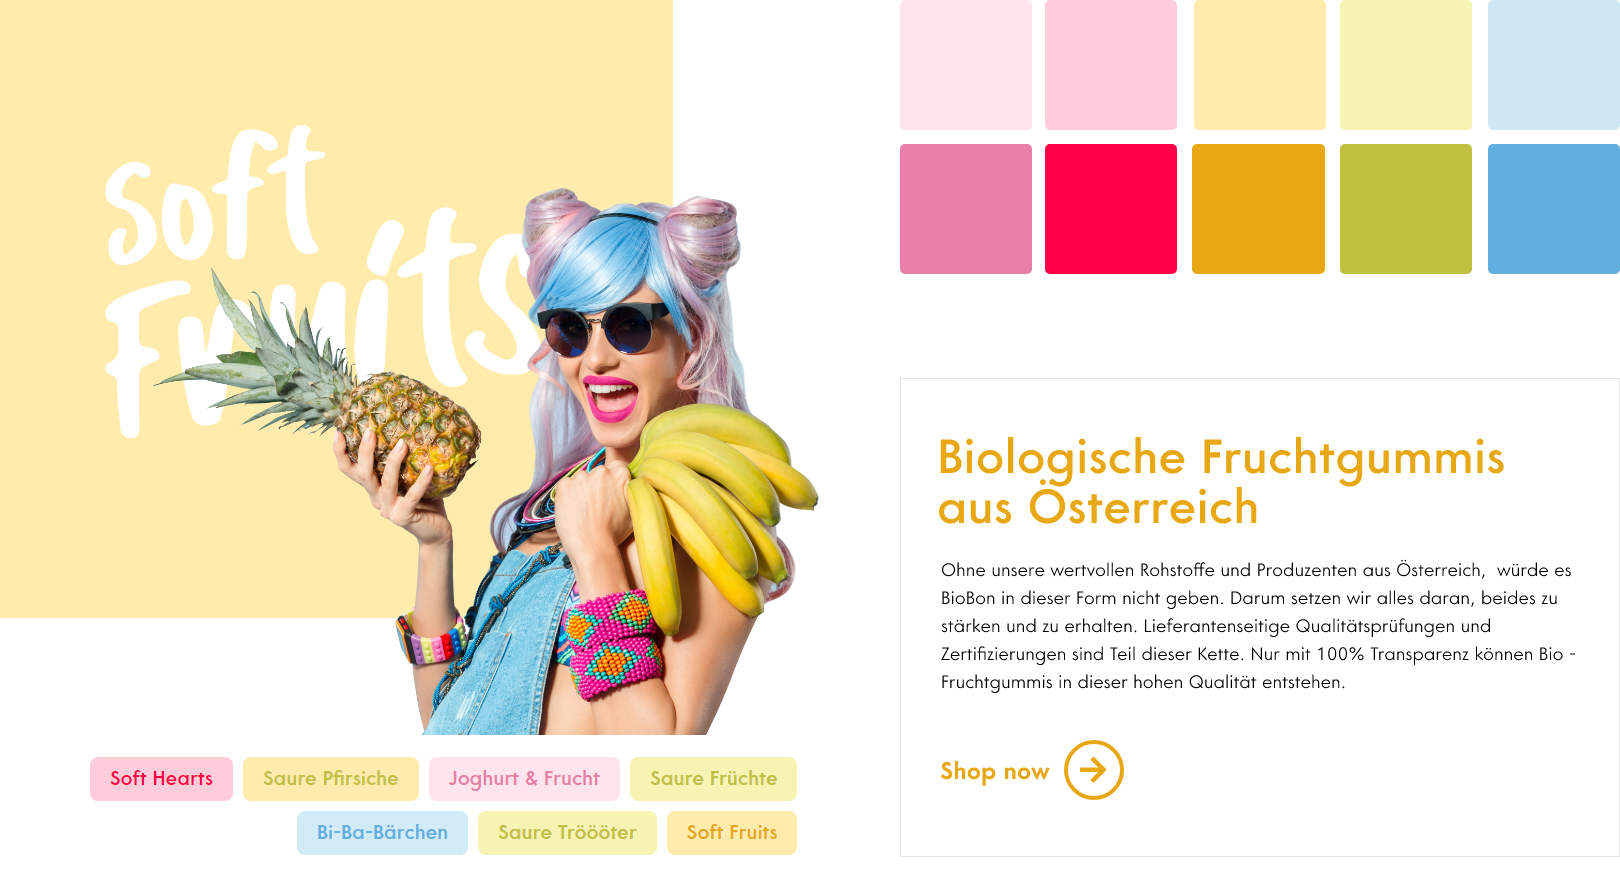 Farb- und Bilderwelt der BioBon Website